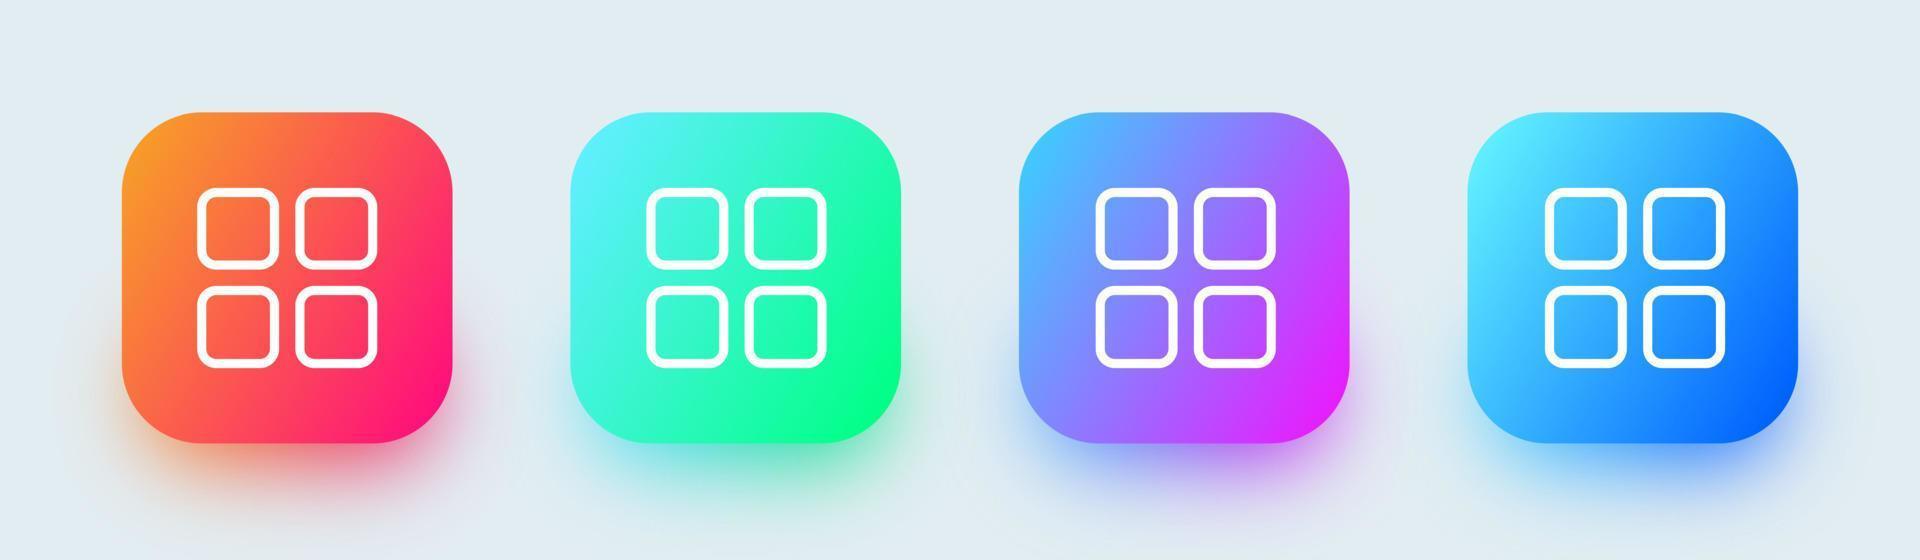 icône de contour du menu principal dans des couleurs dégradées carrées. collection d'icônes de liste d'applications. vecteur